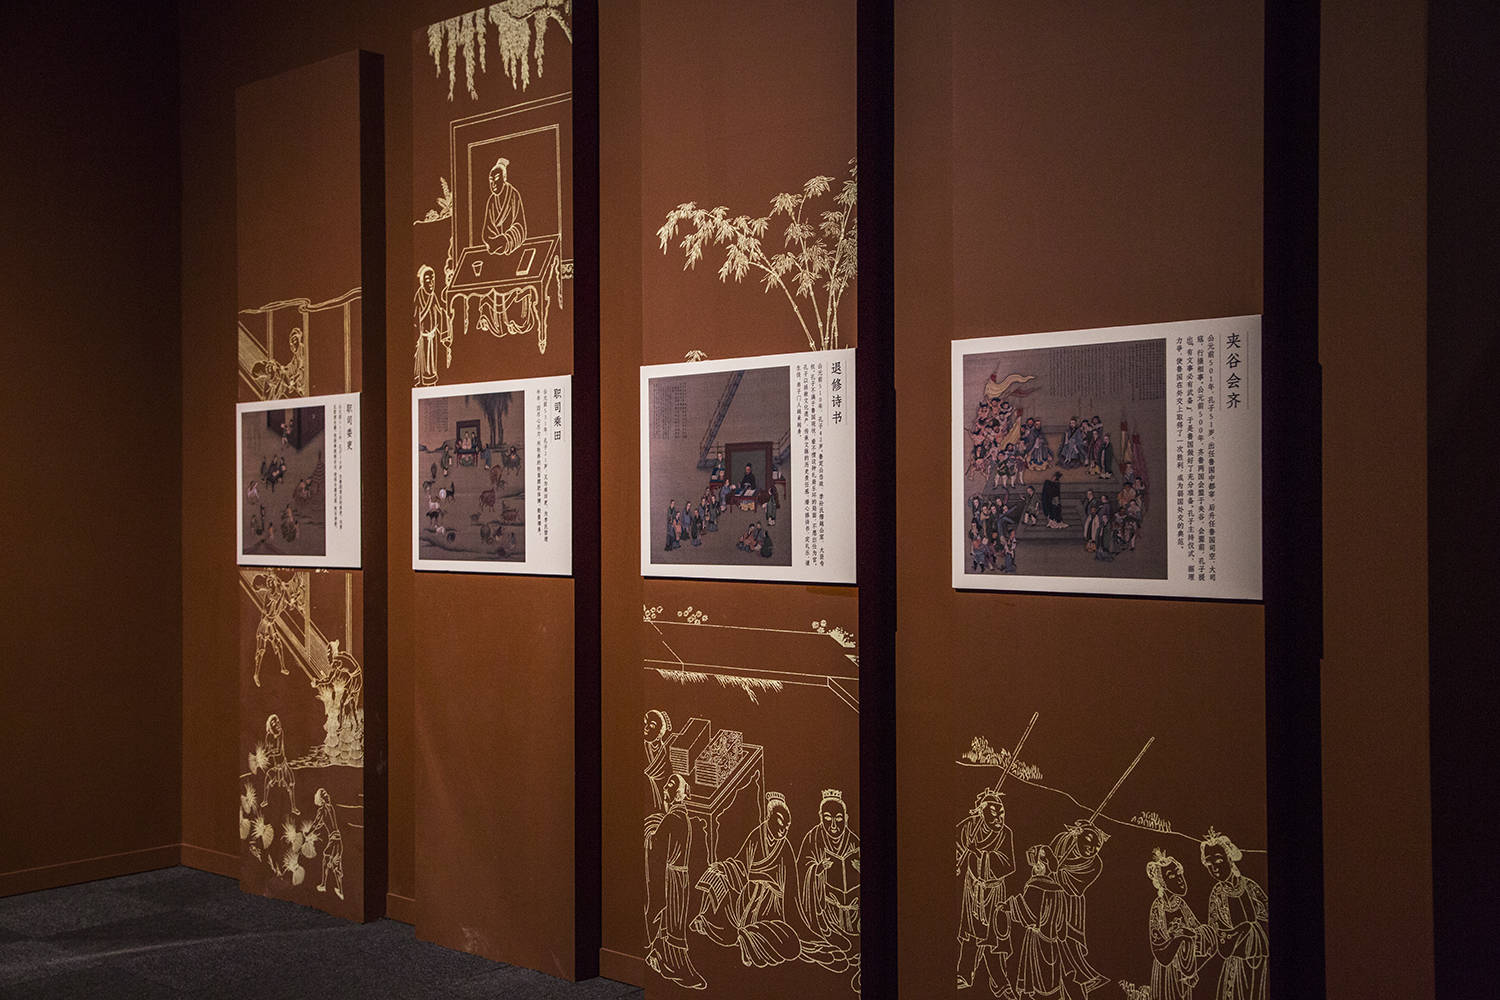 国家博物馆孔子文化展,不同维度的作品展示